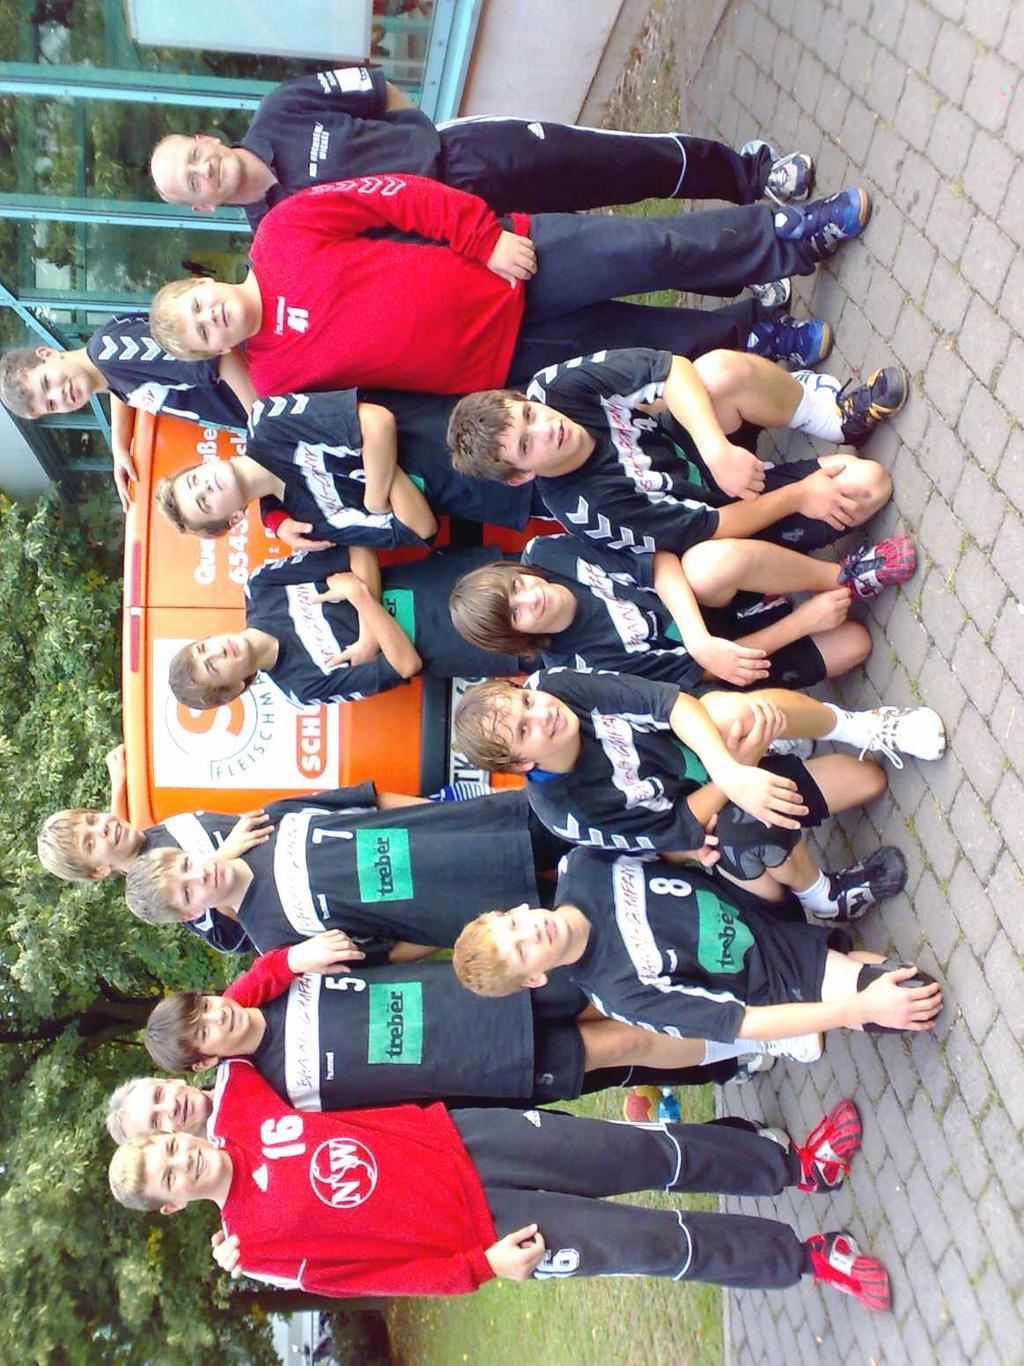 B-Jugend Turniersieger: HSG Hochheim/Wicker 1; 2. Platz: HSG Kastellaun/Simmern; 3. Platz: Ederbergland (kampflos); 4. Platz: SG Saulheim C-Jugend Turniersieger: HSG Hochheim/Wicker 1; 2.